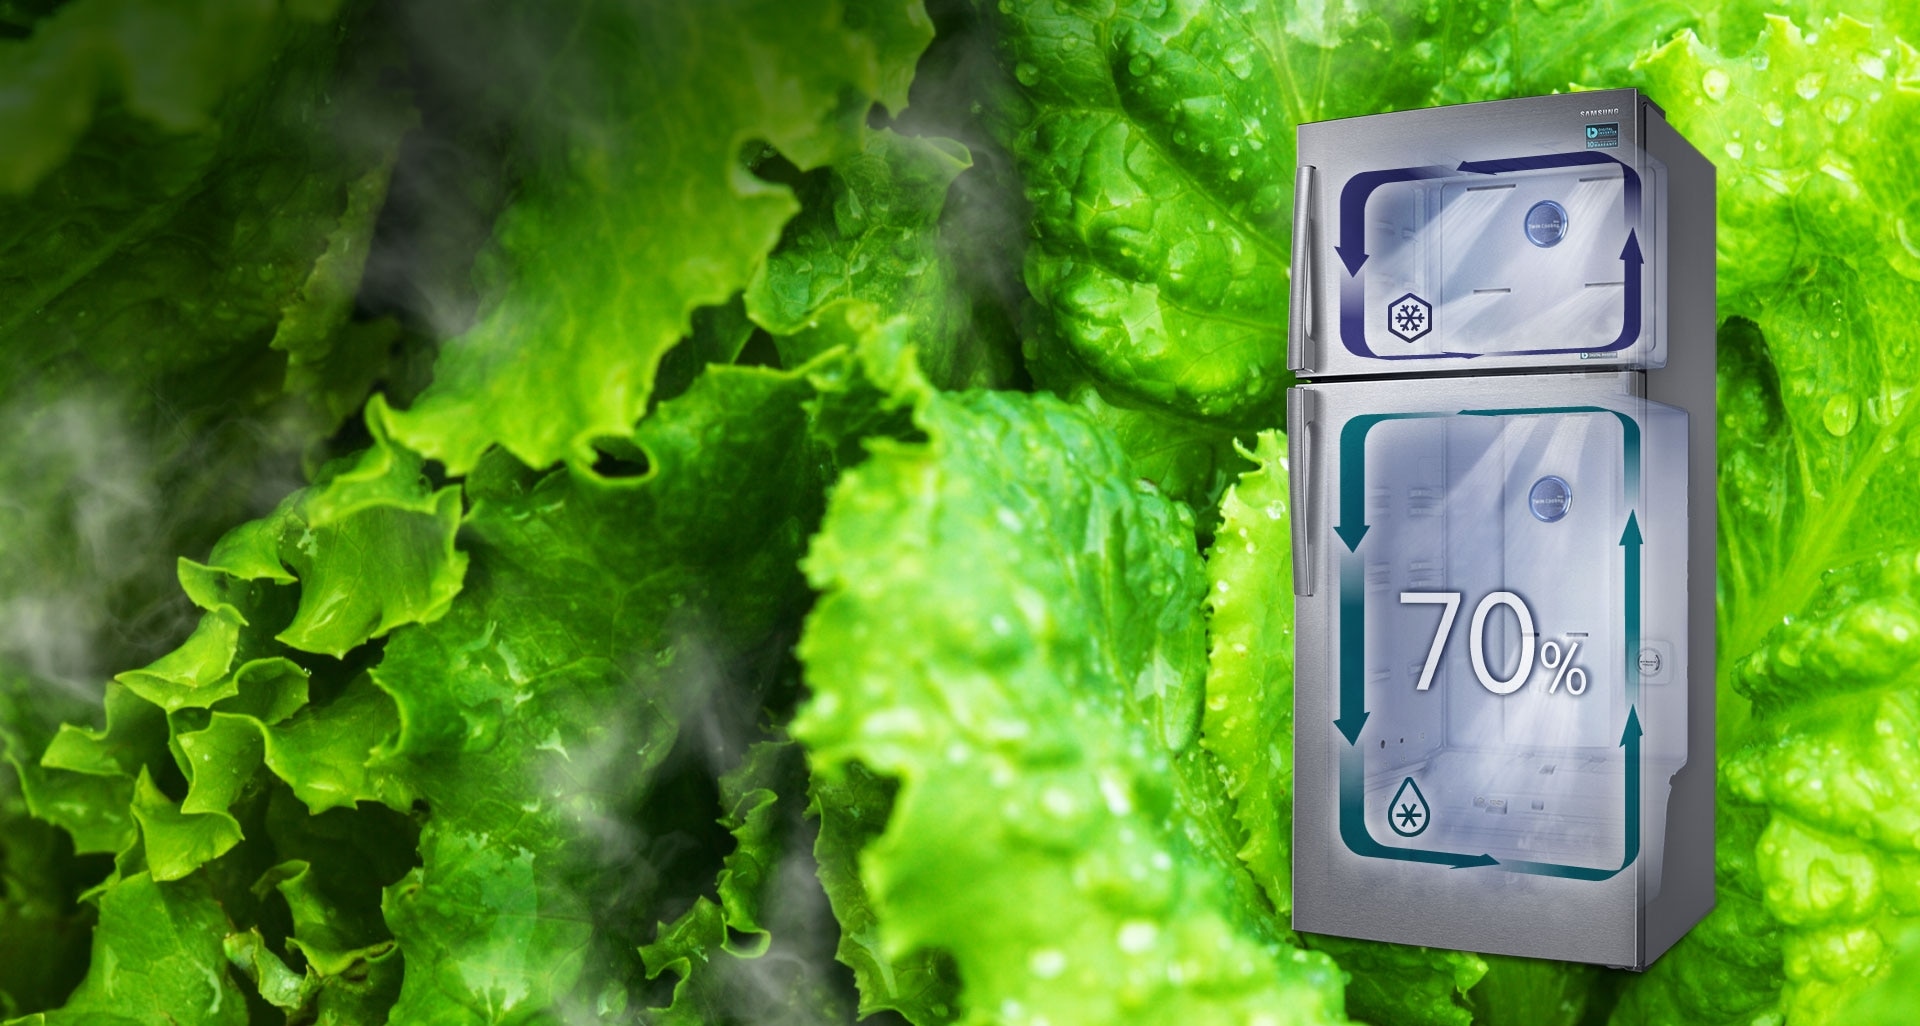 Seule la technologie Twin Cooling Plus™ est capable de créer un environnement qui favorise la préservation des aliments frais dans le réfrigérateur grâce à un taux d’humidité de 70%, contre 30% dans les réfrigérateurs classiques avec congélateur en haut. Cette technologie conserve ainsi plus longtemps la fraîcheur des aliments, sans les dessécher.